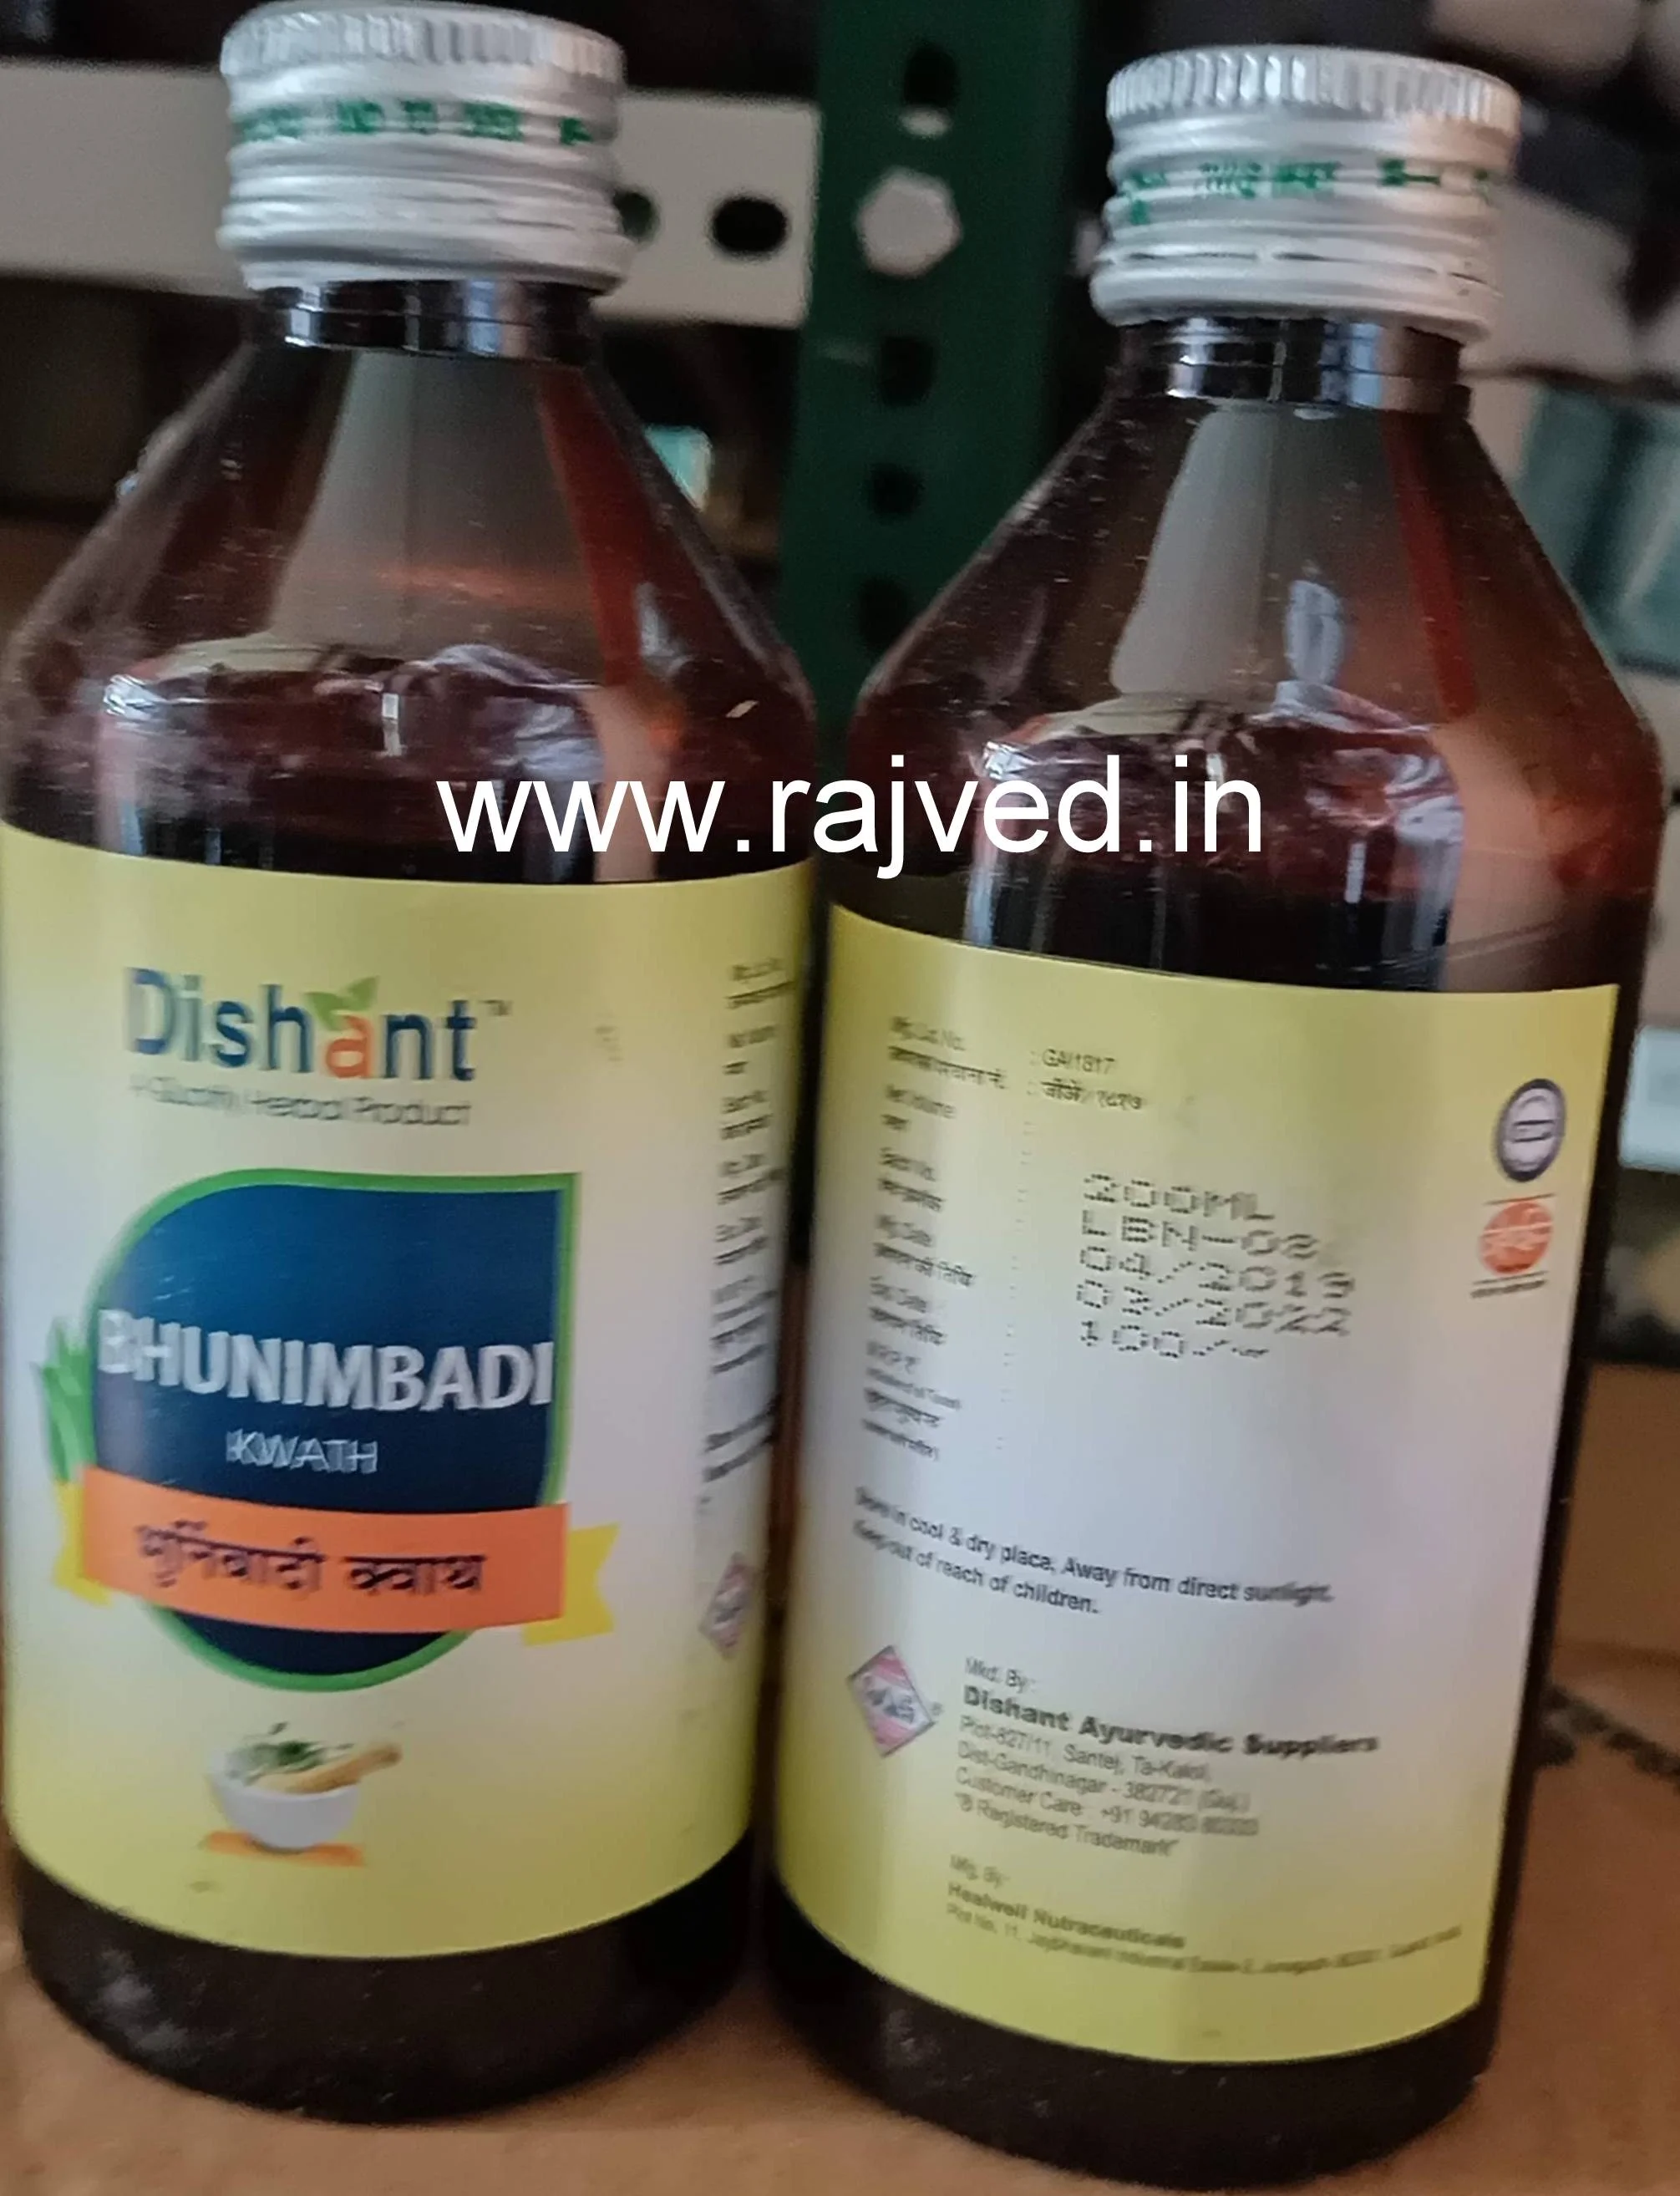 Bhunimbadi kwath 400ml dishant ayurvedic suppliers